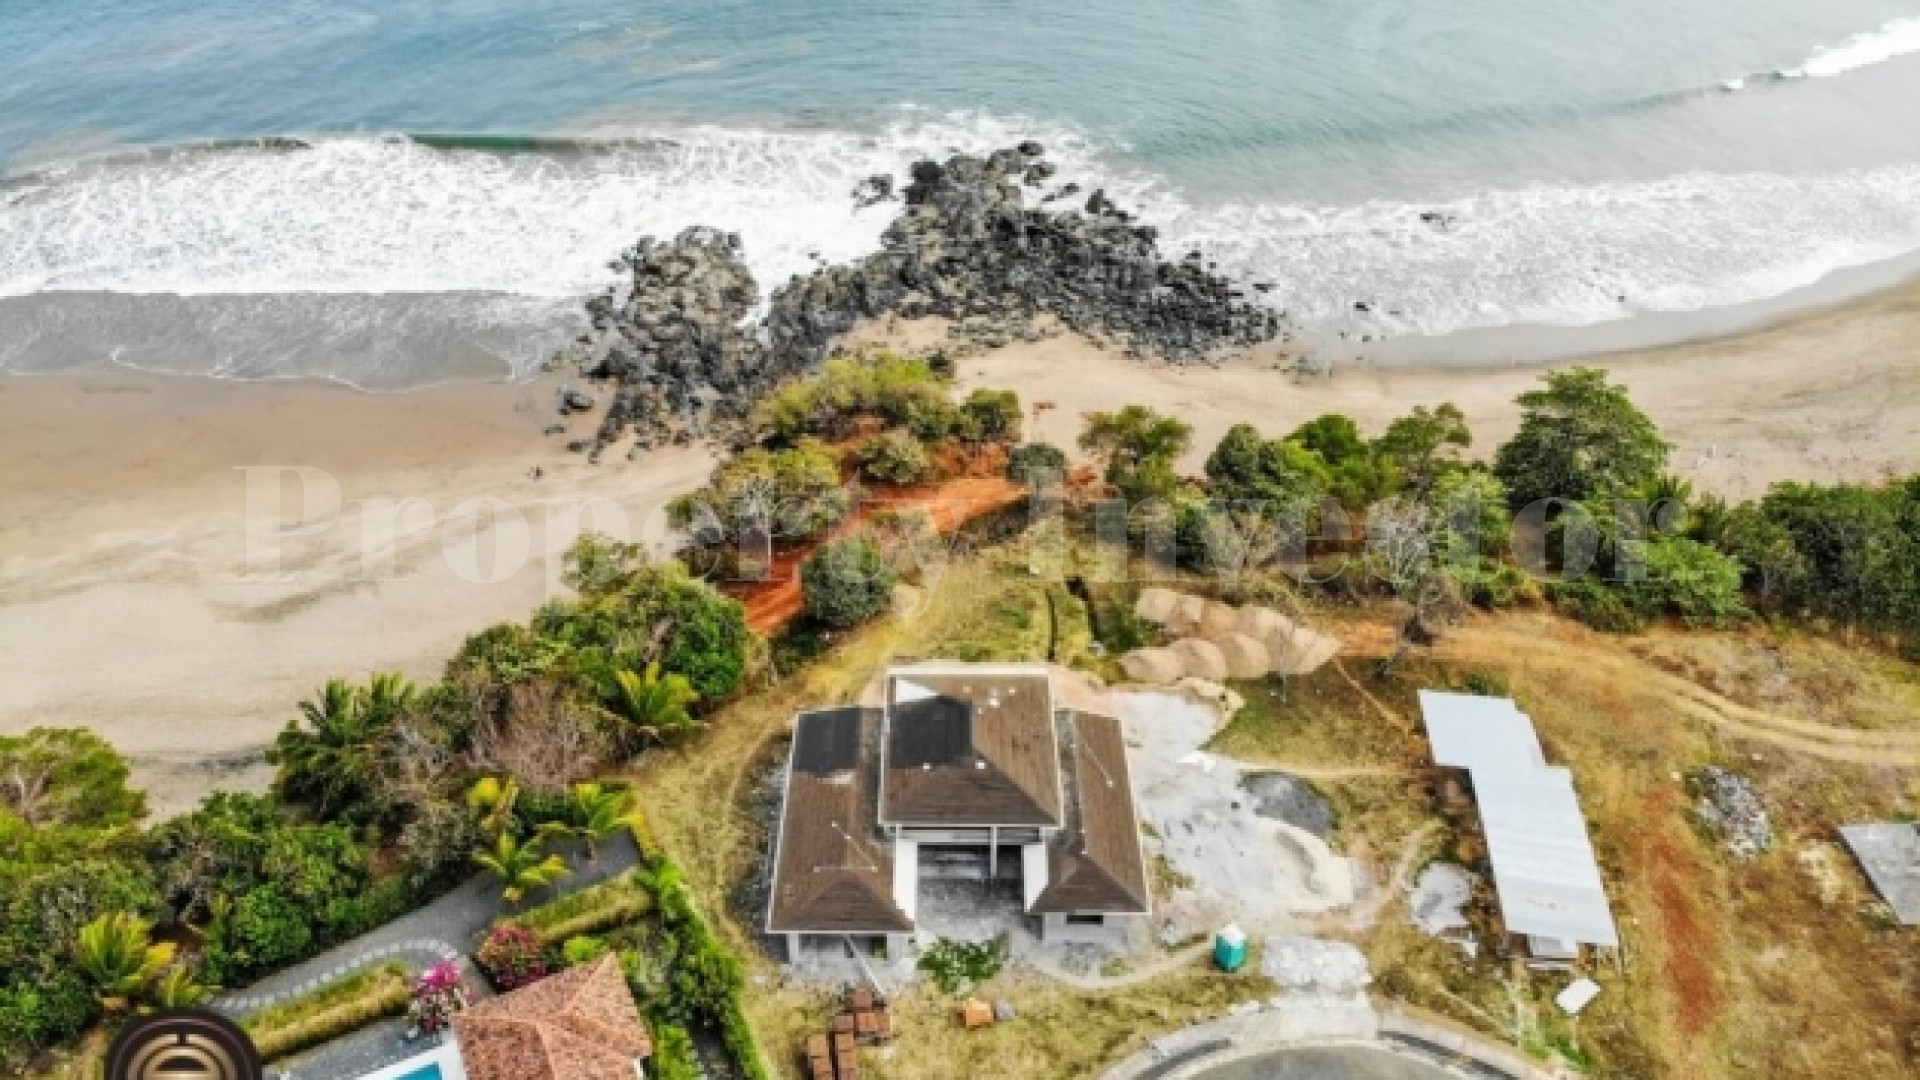 Незавершенное строительство дома на 3 спальни на берегу пляжа в Педасе, Панама